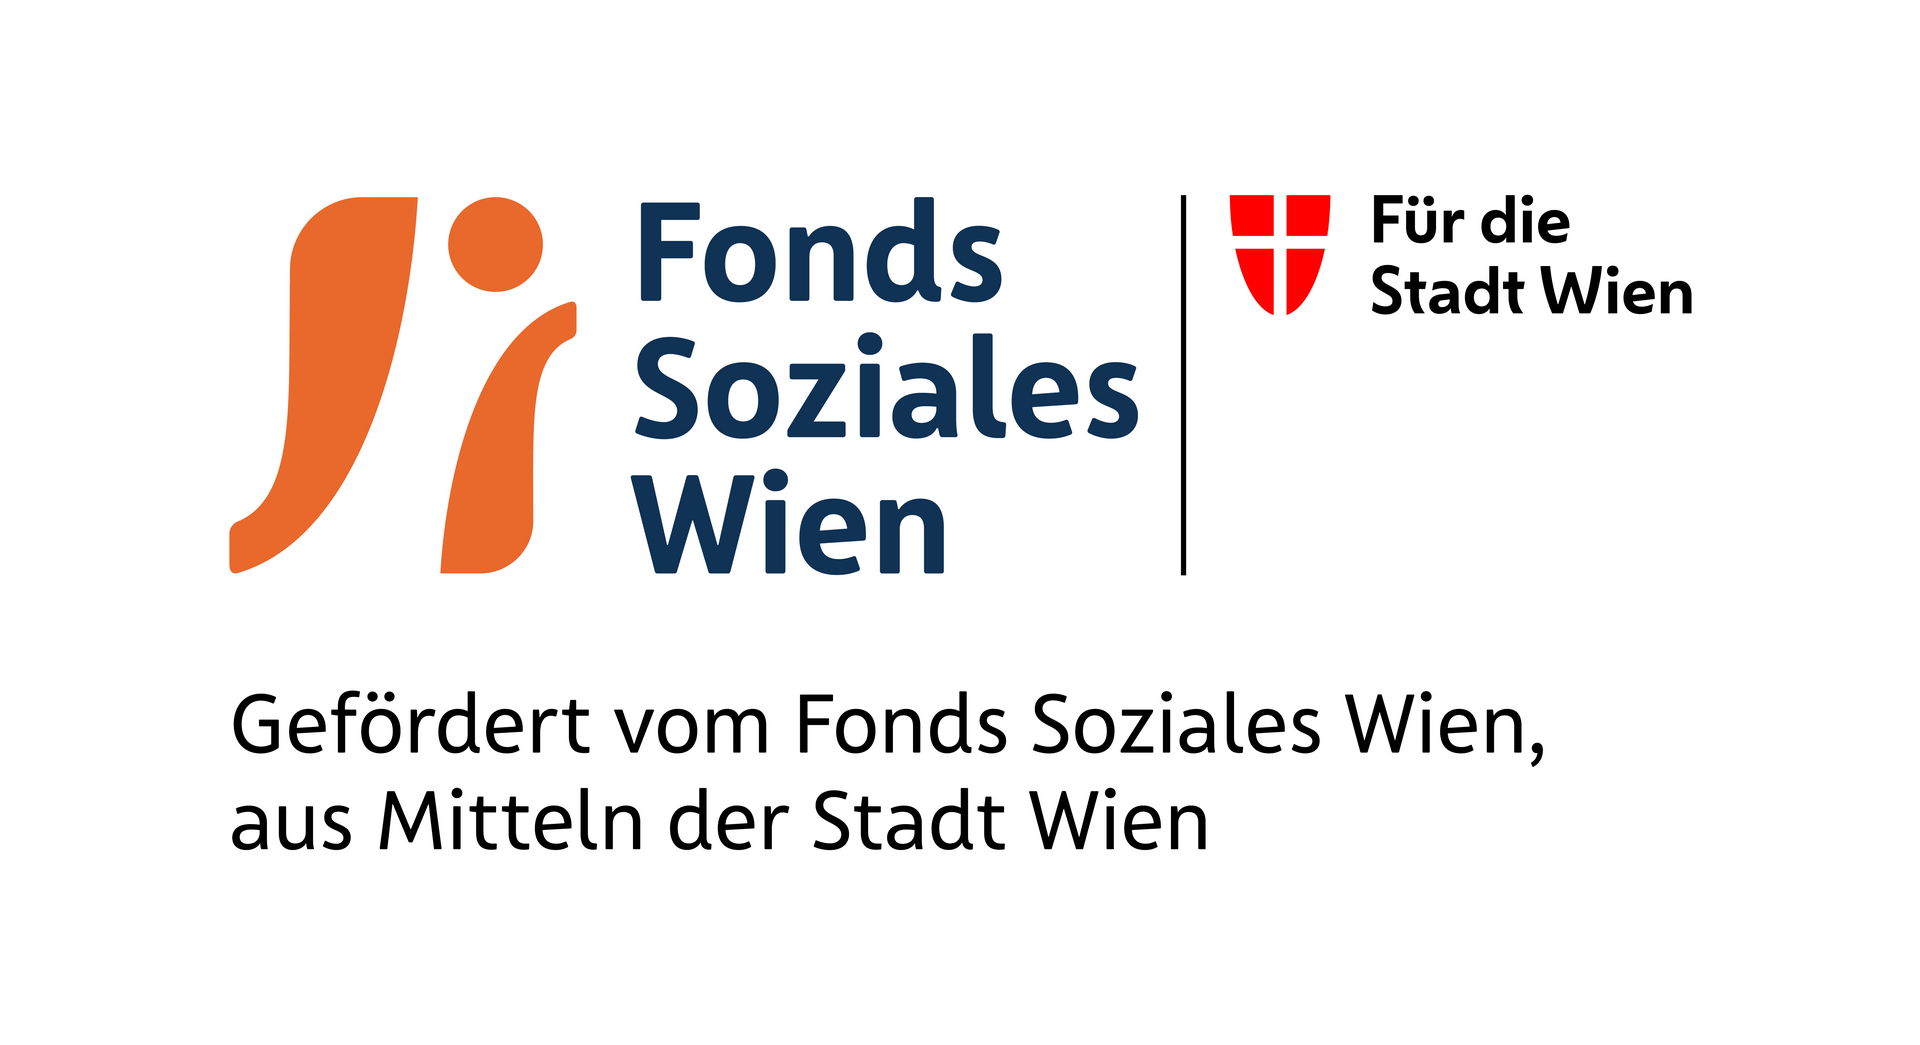 Gefördert vom Fonds Soziales Wien aus Mitteln der Stadt Wien